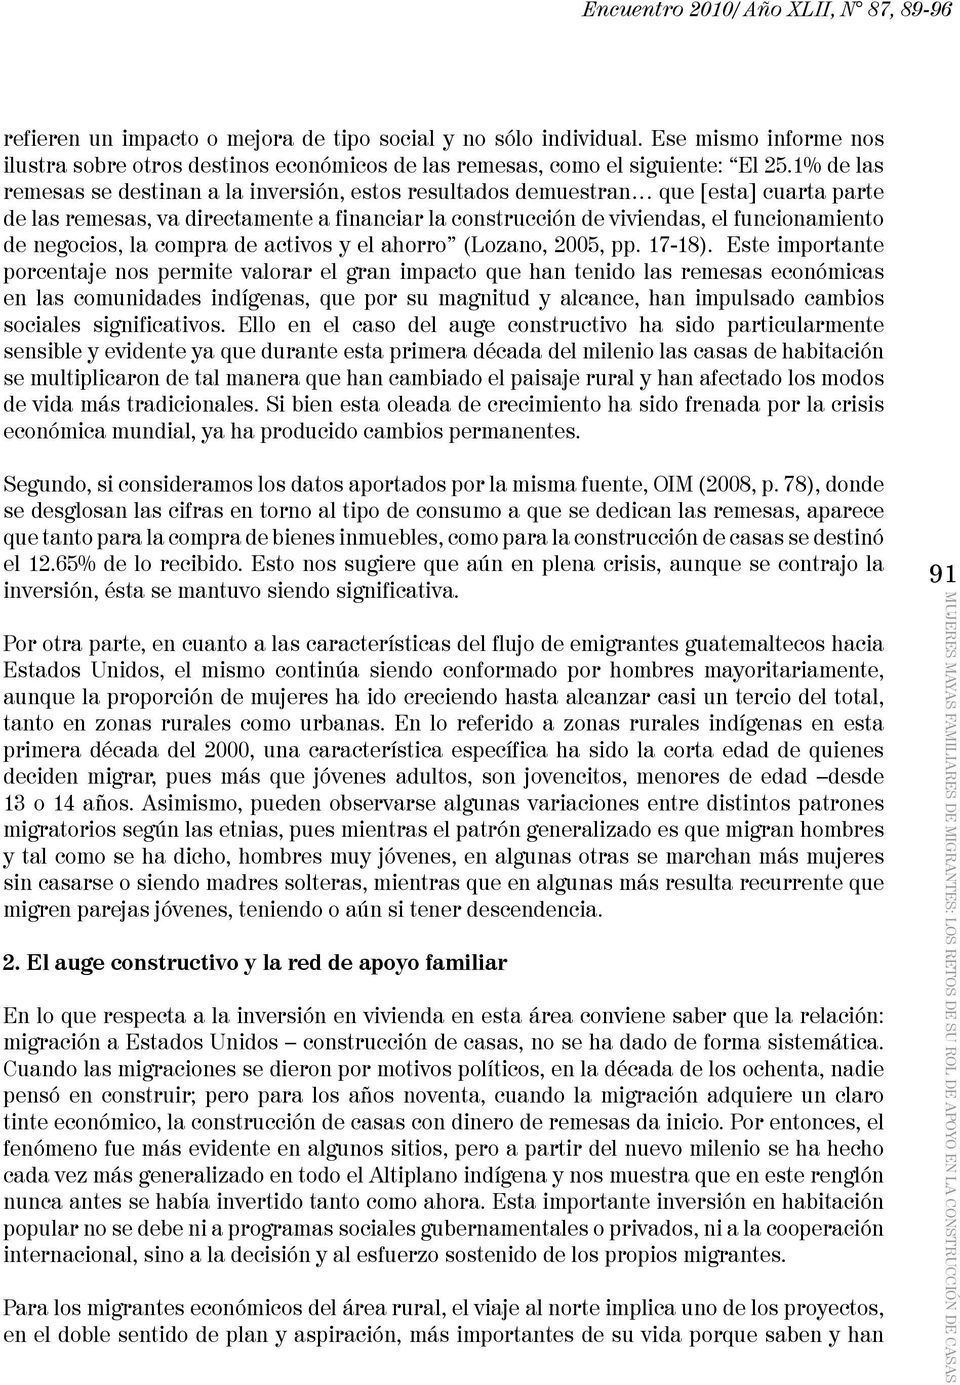 negocios, la compra de activos y el ahorro (Lozano, 2005, pp. 17-18).